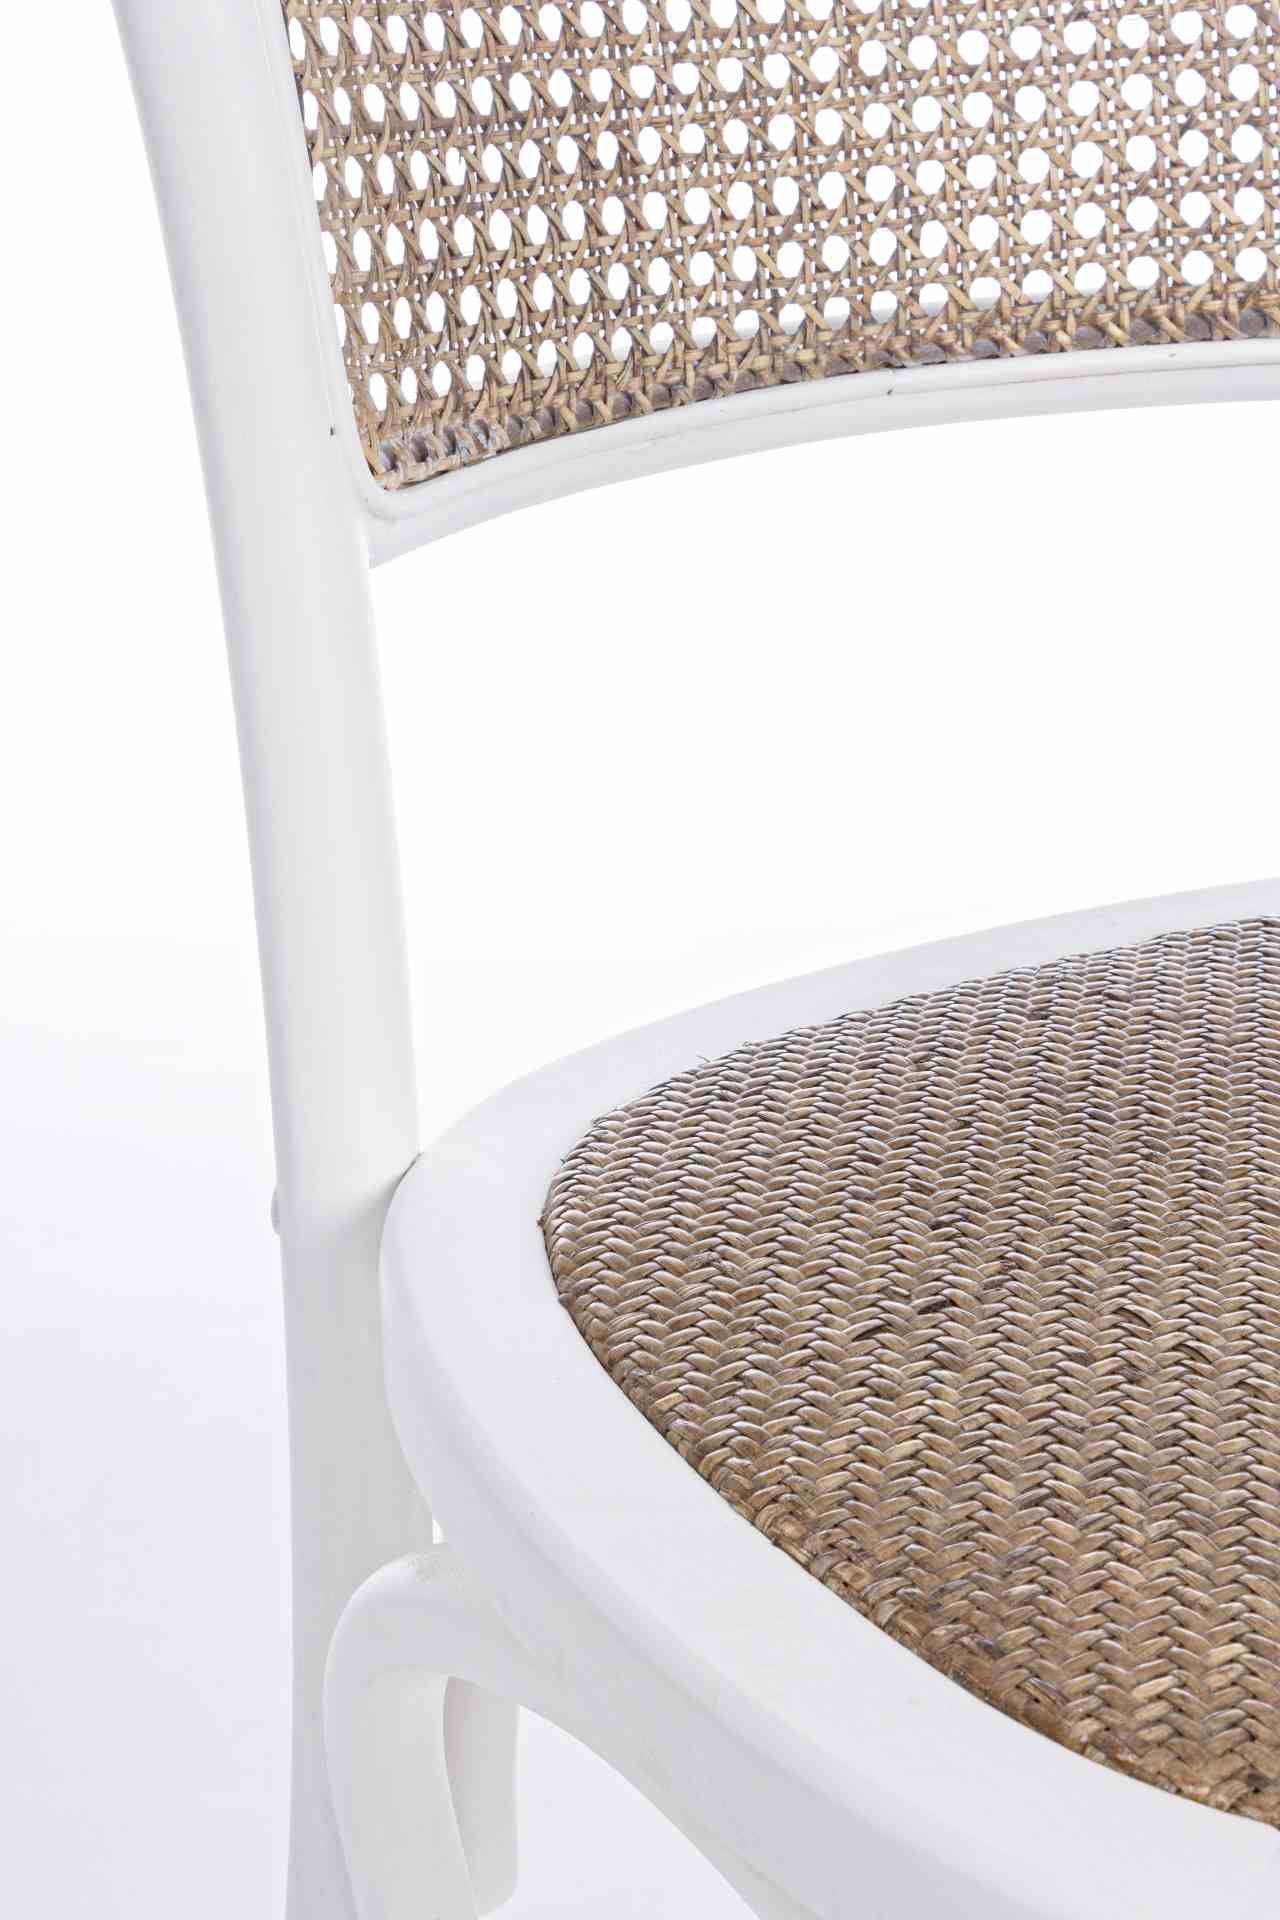 Der Stuhl Carrel überzeugt mit seinem klassischen Design. Gefertigt wurde der Stuhl aus Ulmenholz, welches einen weißen Farbton besitzt. Die Sitz- und Rückenfläche sind aus Rattan. Die Sitzhöhe beträgt 46 cm.